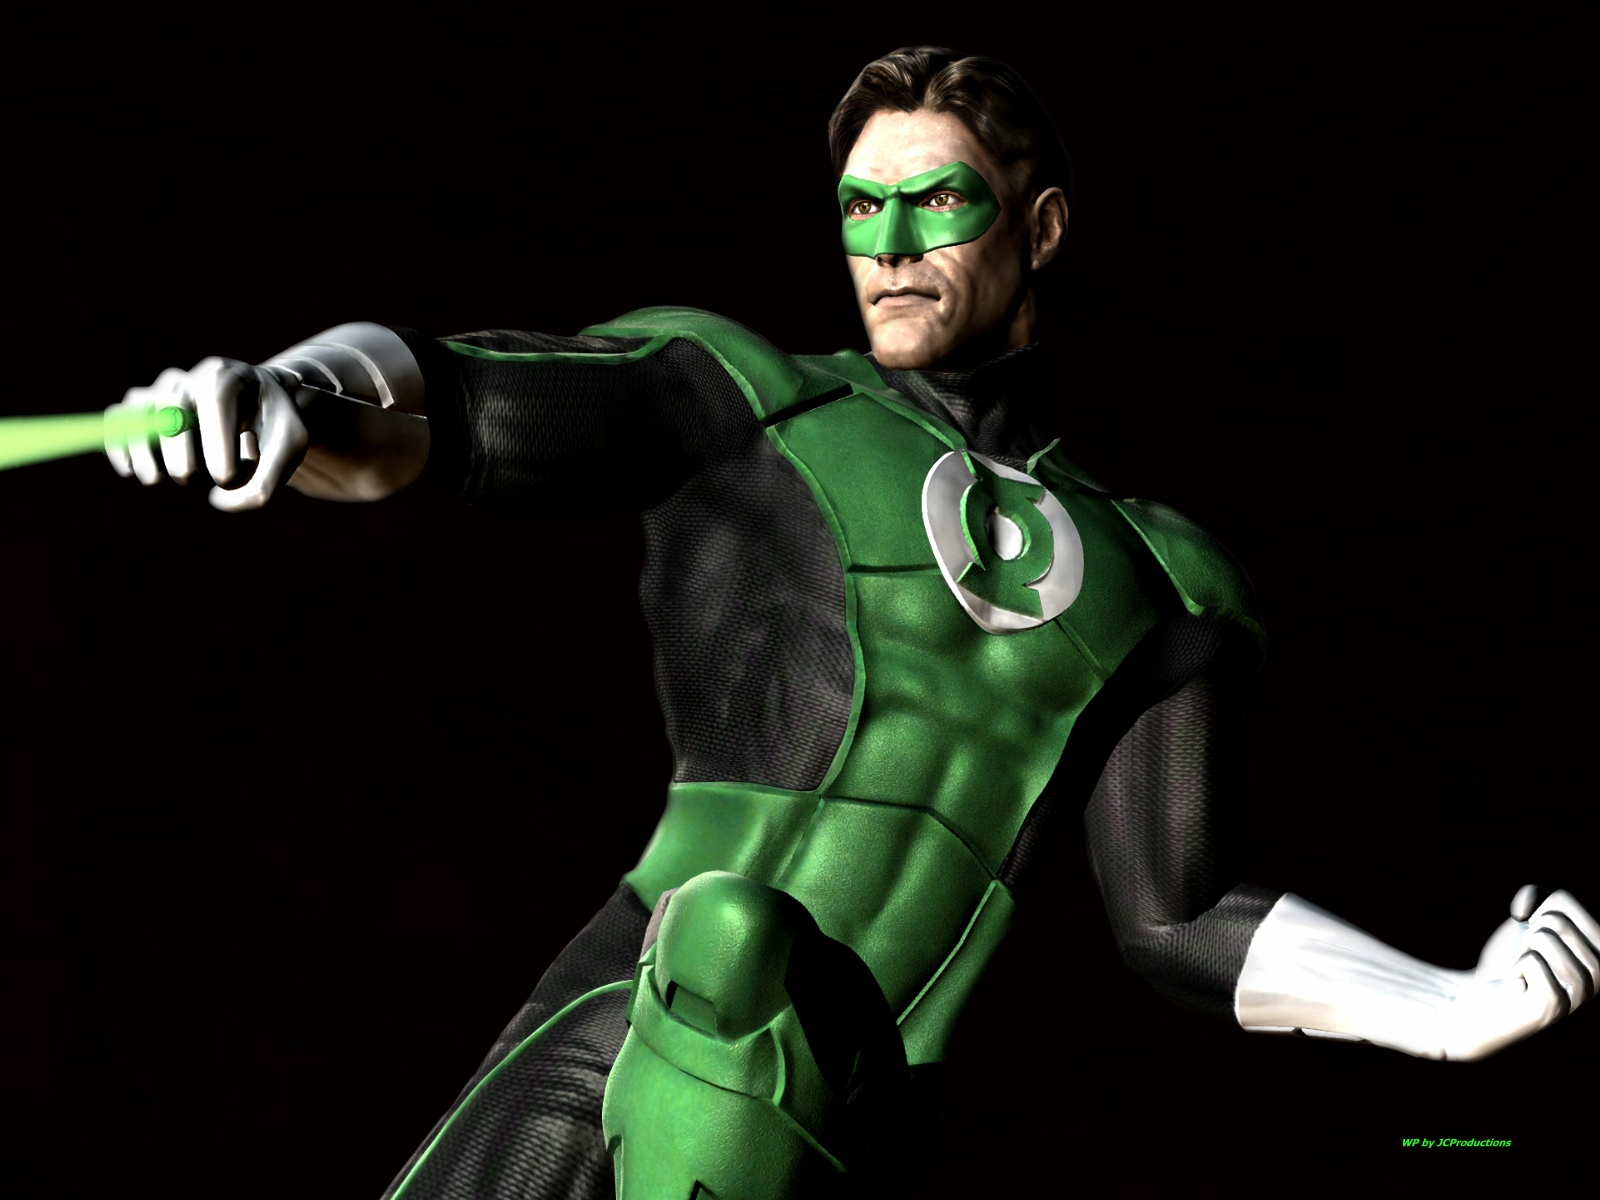 緑のランタンの壁紙,架空の人物,スーパーヒーロー,アクションフィギュア,超悪役,グリーンランタン